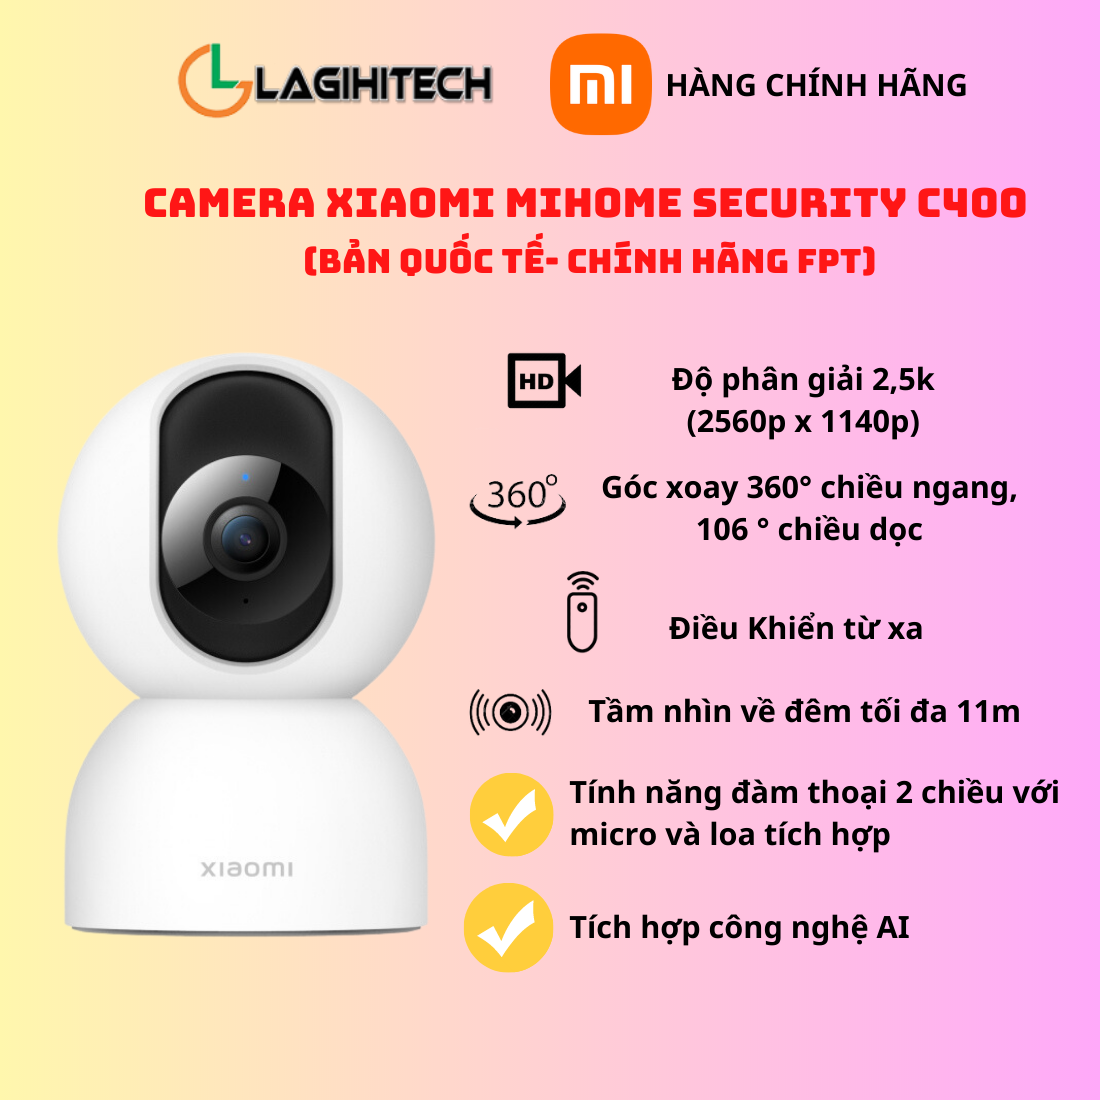 Camera Thông Minh Xiaomi C400 BHR6619GL Bản Quốc Tế - Hàng Chính Hãng FPT